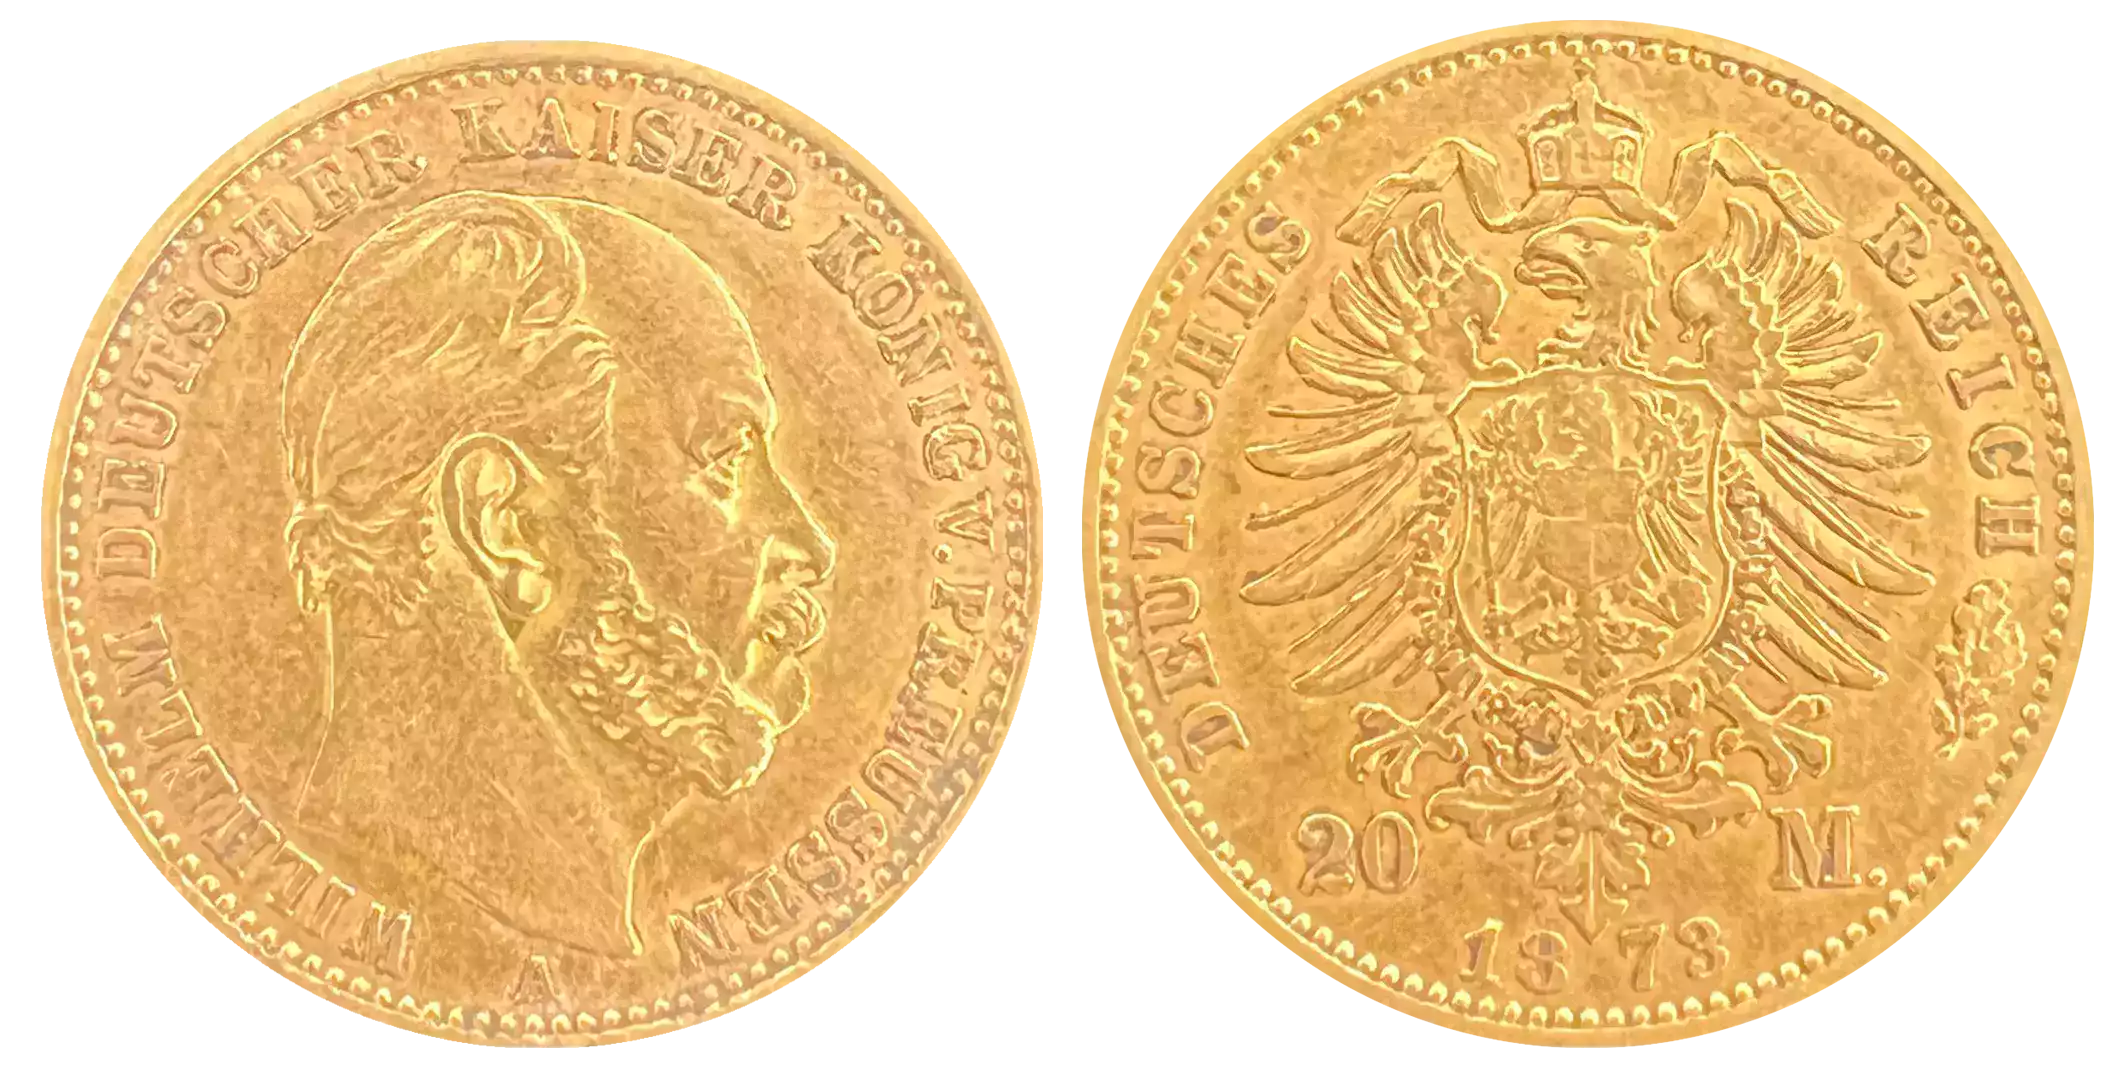 achat-20-reichsmark-or.webp